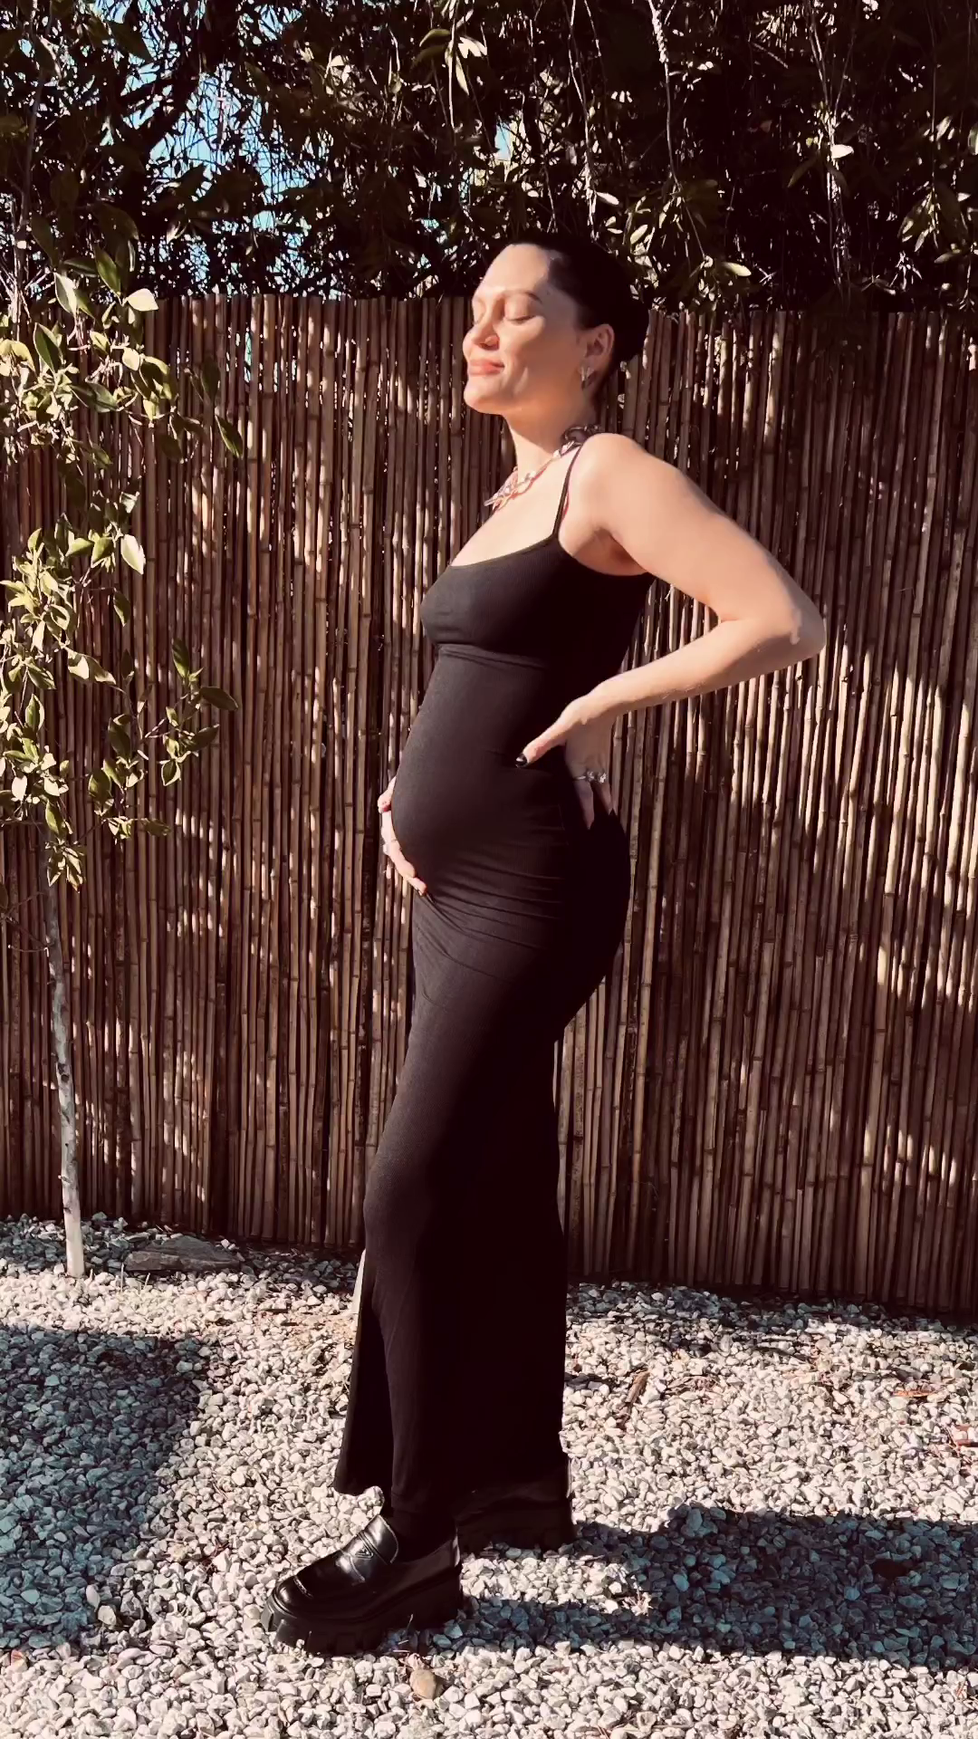 Zpěvačka Jessie J bude maminkou